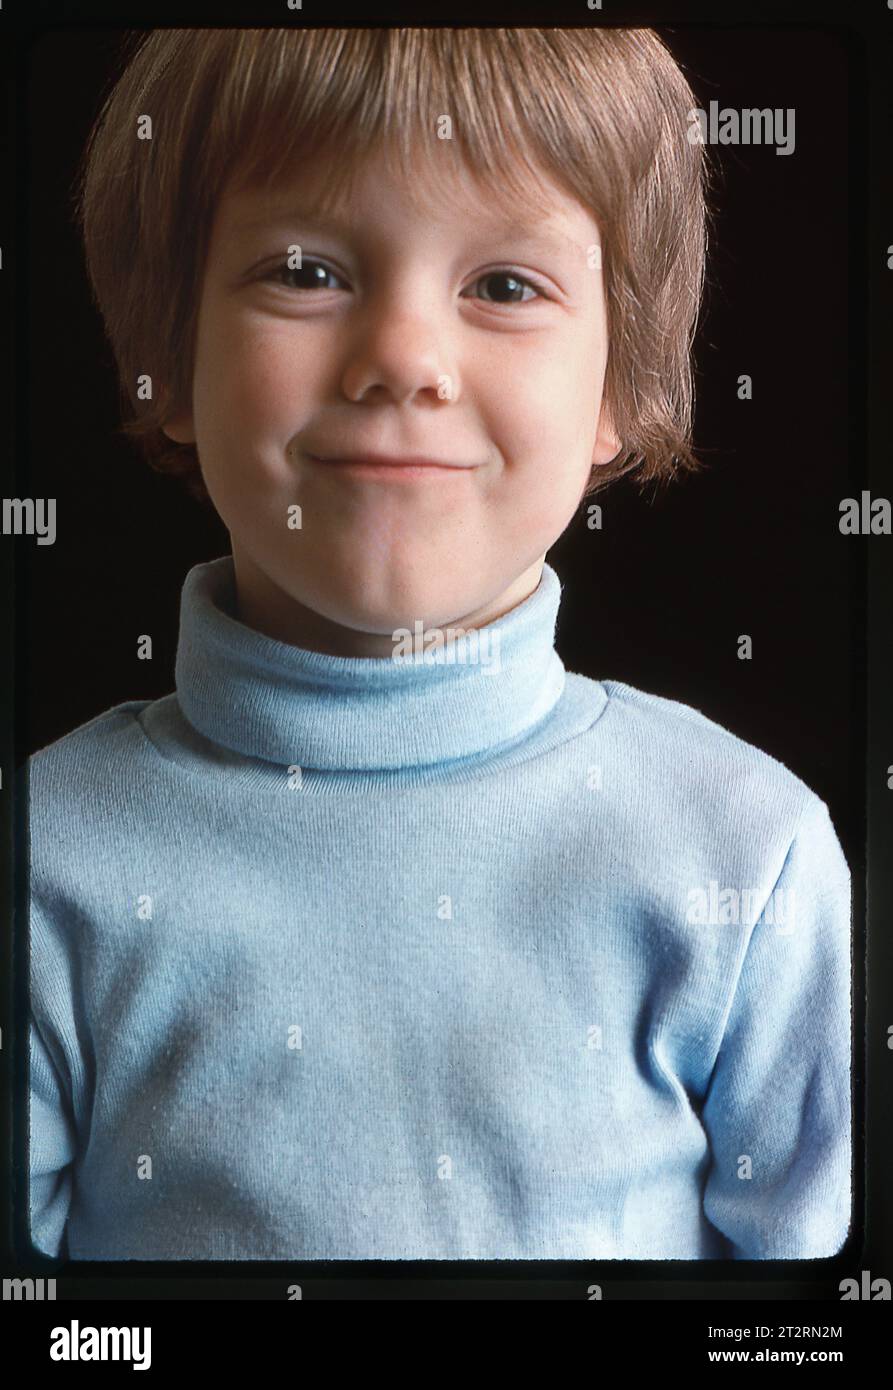 Der ehemalige Kinderschauspieler Cary Guffey ist bekannt für die Rolle des Barry Guiler in dem Film Close Encounters of the Third Kind. Jetzt ist er Finanzminister planner.in Douglasville, Georgia, Anfang 1978. Stockfoto